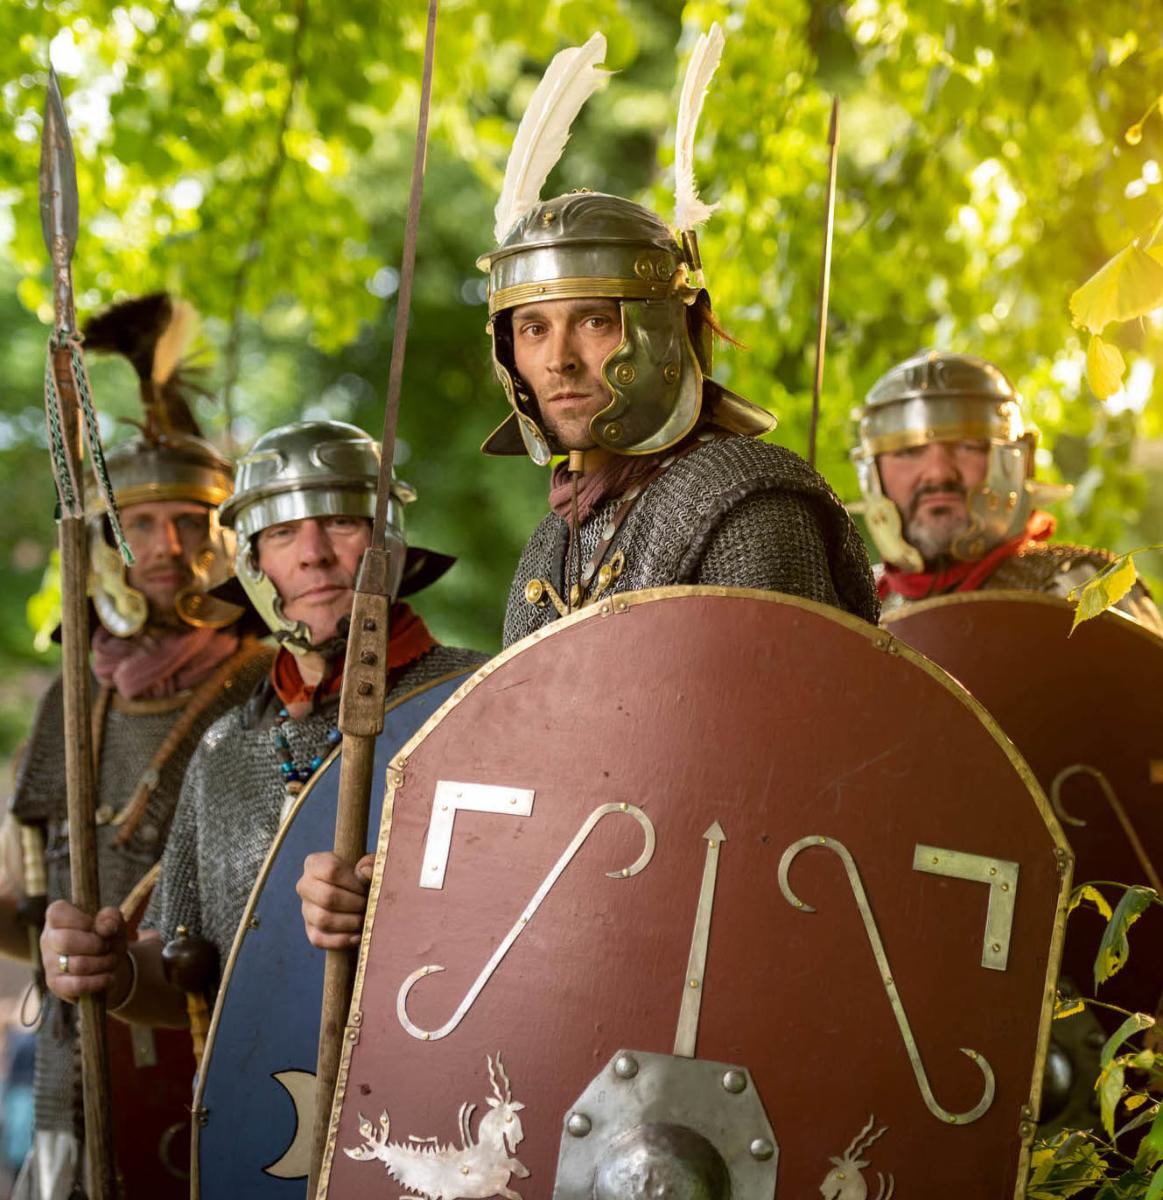 People dressed as roman soldiers